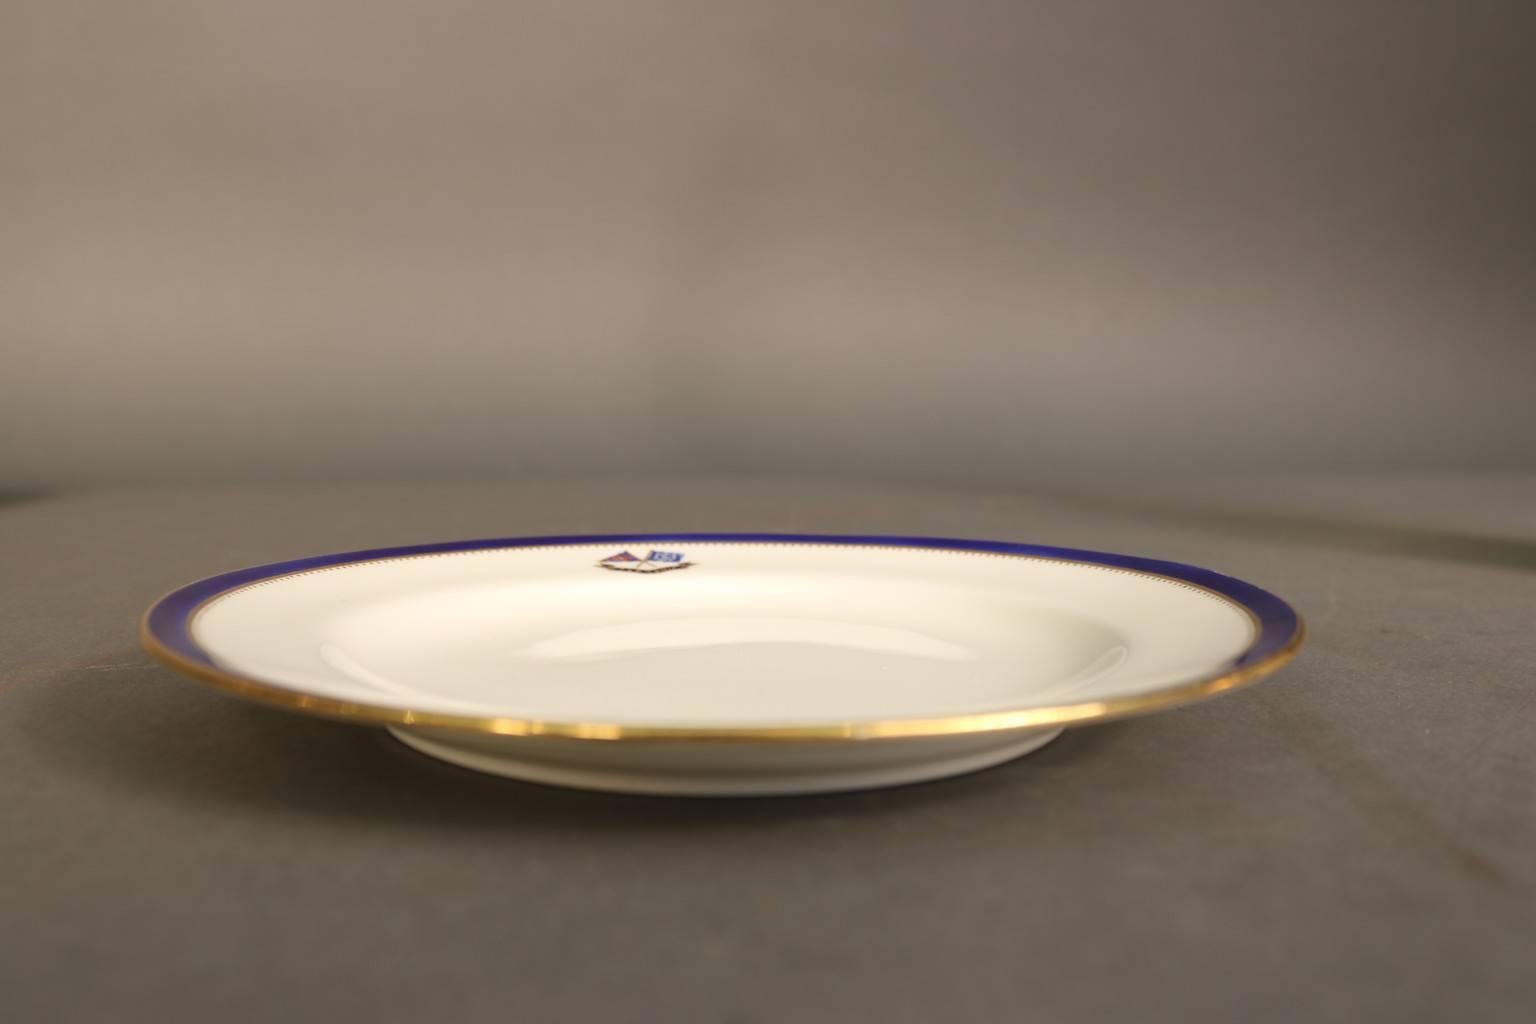 Vaisselle personnelle fabriquée exclusivement pour J. Pierpont Morgan (1837-1913) pour être utilisée à bord de son yacht à vapeur personnel corsair, construit en 1890. Cette assiette à déjeuner de 8 pouces de Minton's est ornée de la signature de J.